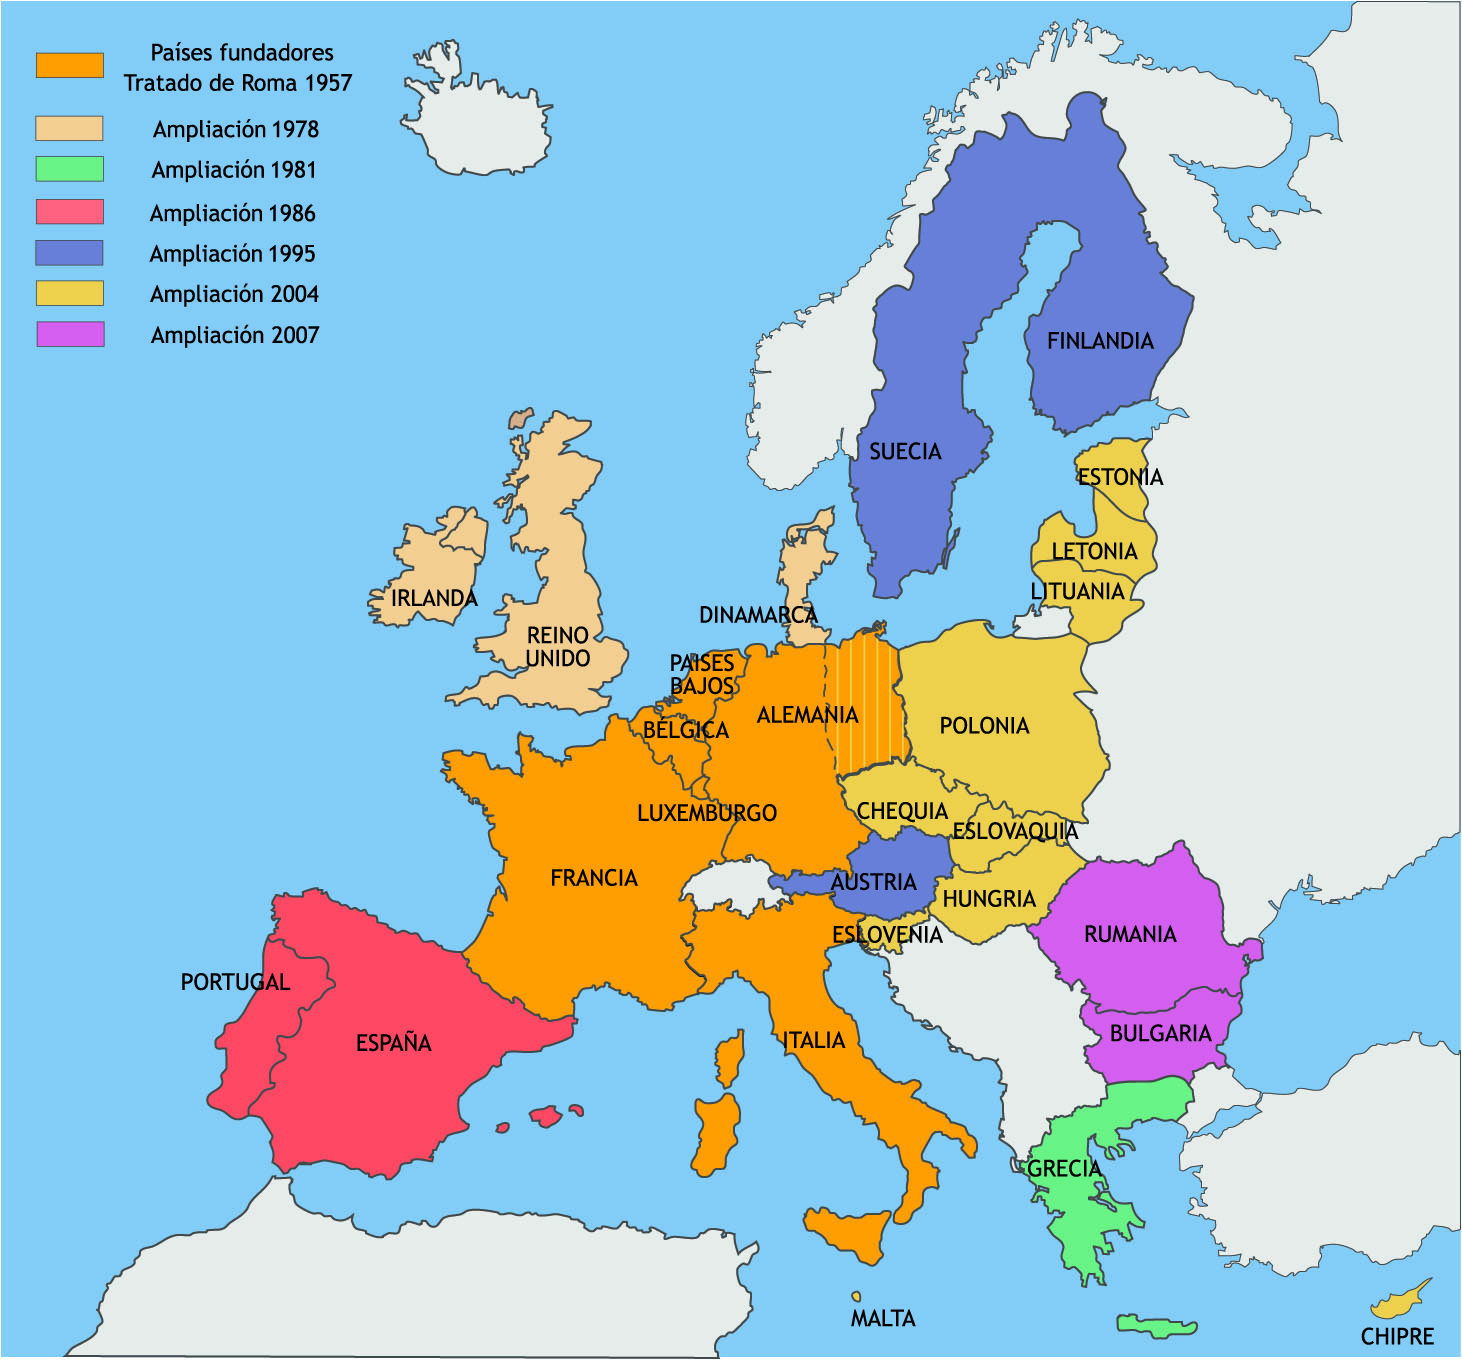 https://mapasinteractivos.didactalia.net/comunidad/mapasflashinteractivos/recurso/paises-de-la-union-europea/99704108-8b32-4e2d-a4f2-f8779870b35b